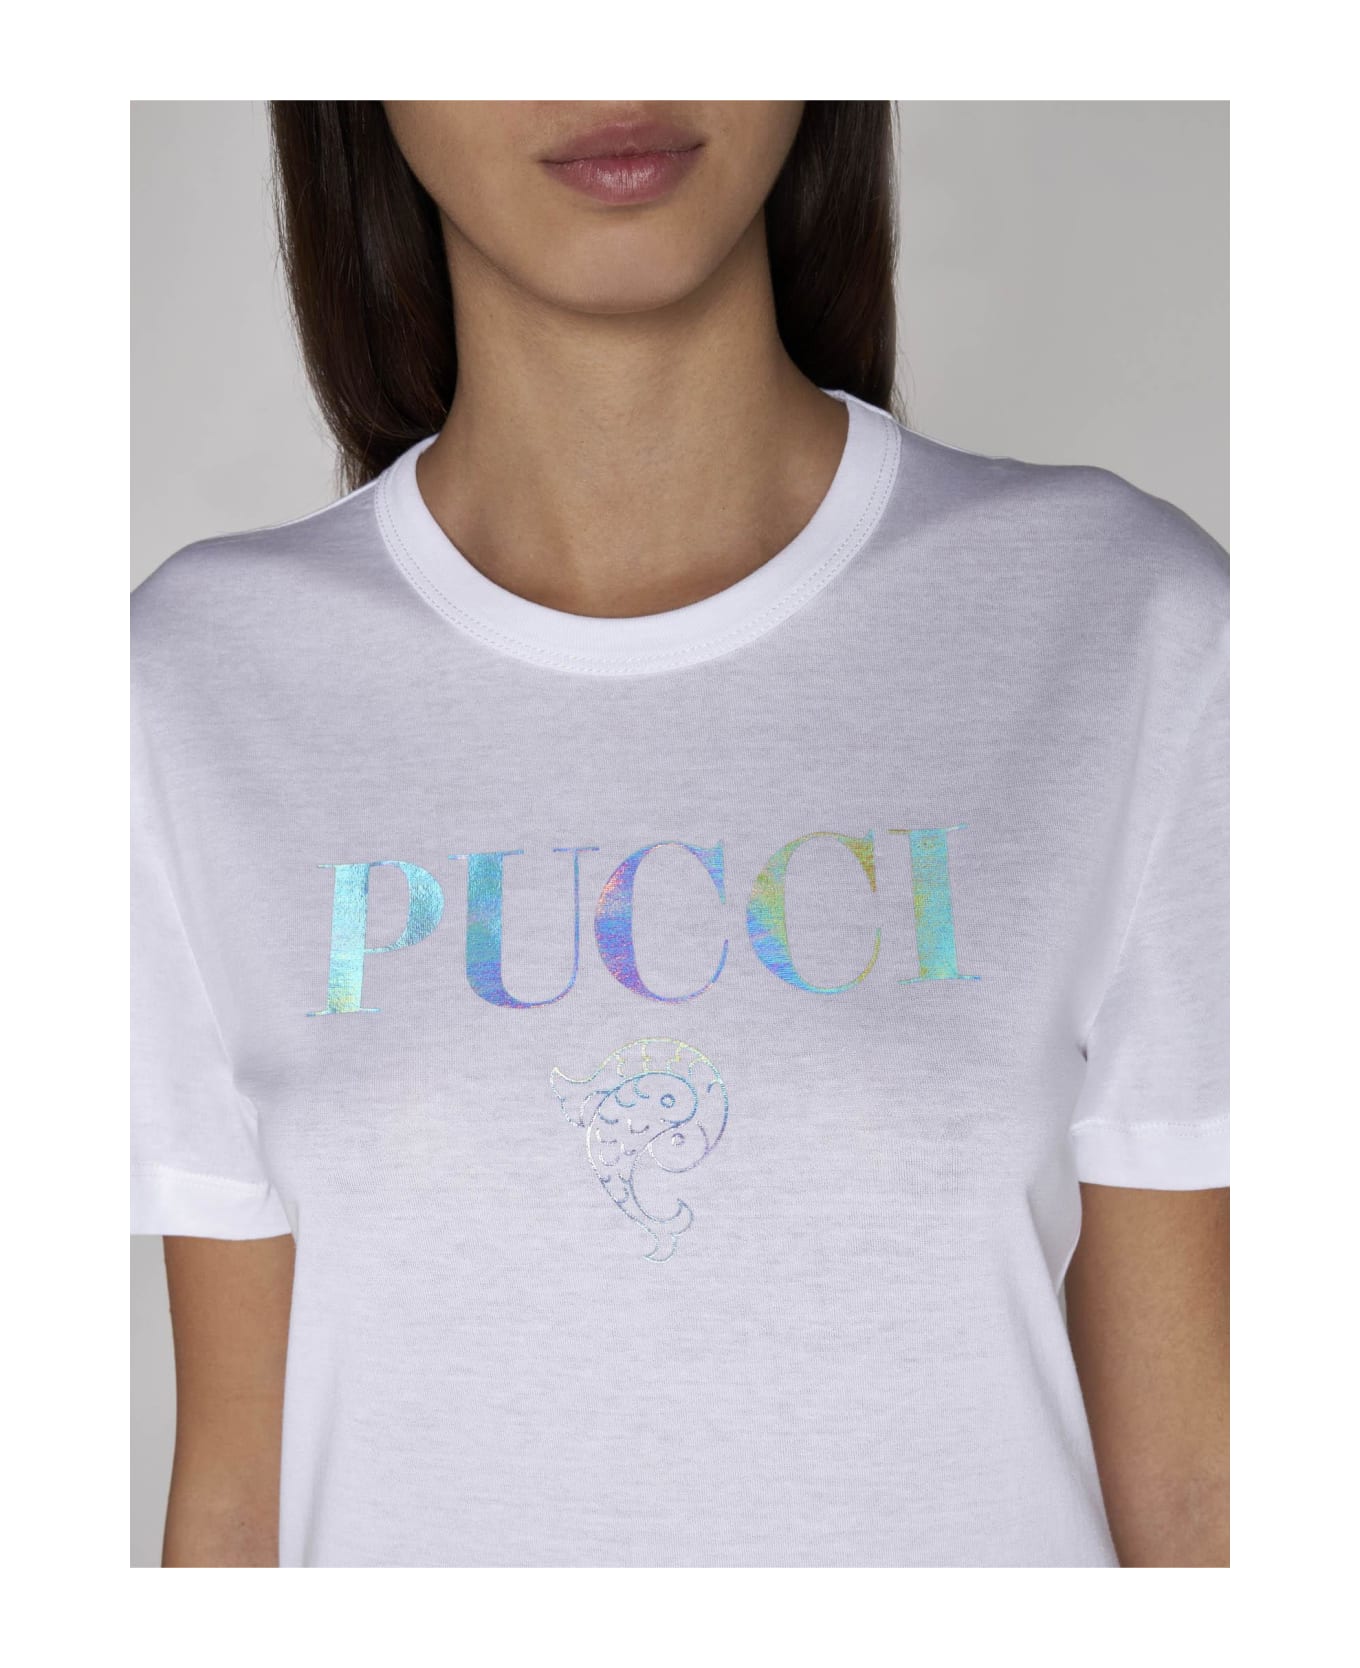 Pucci Logo Cotton T-shirt - BIANCO